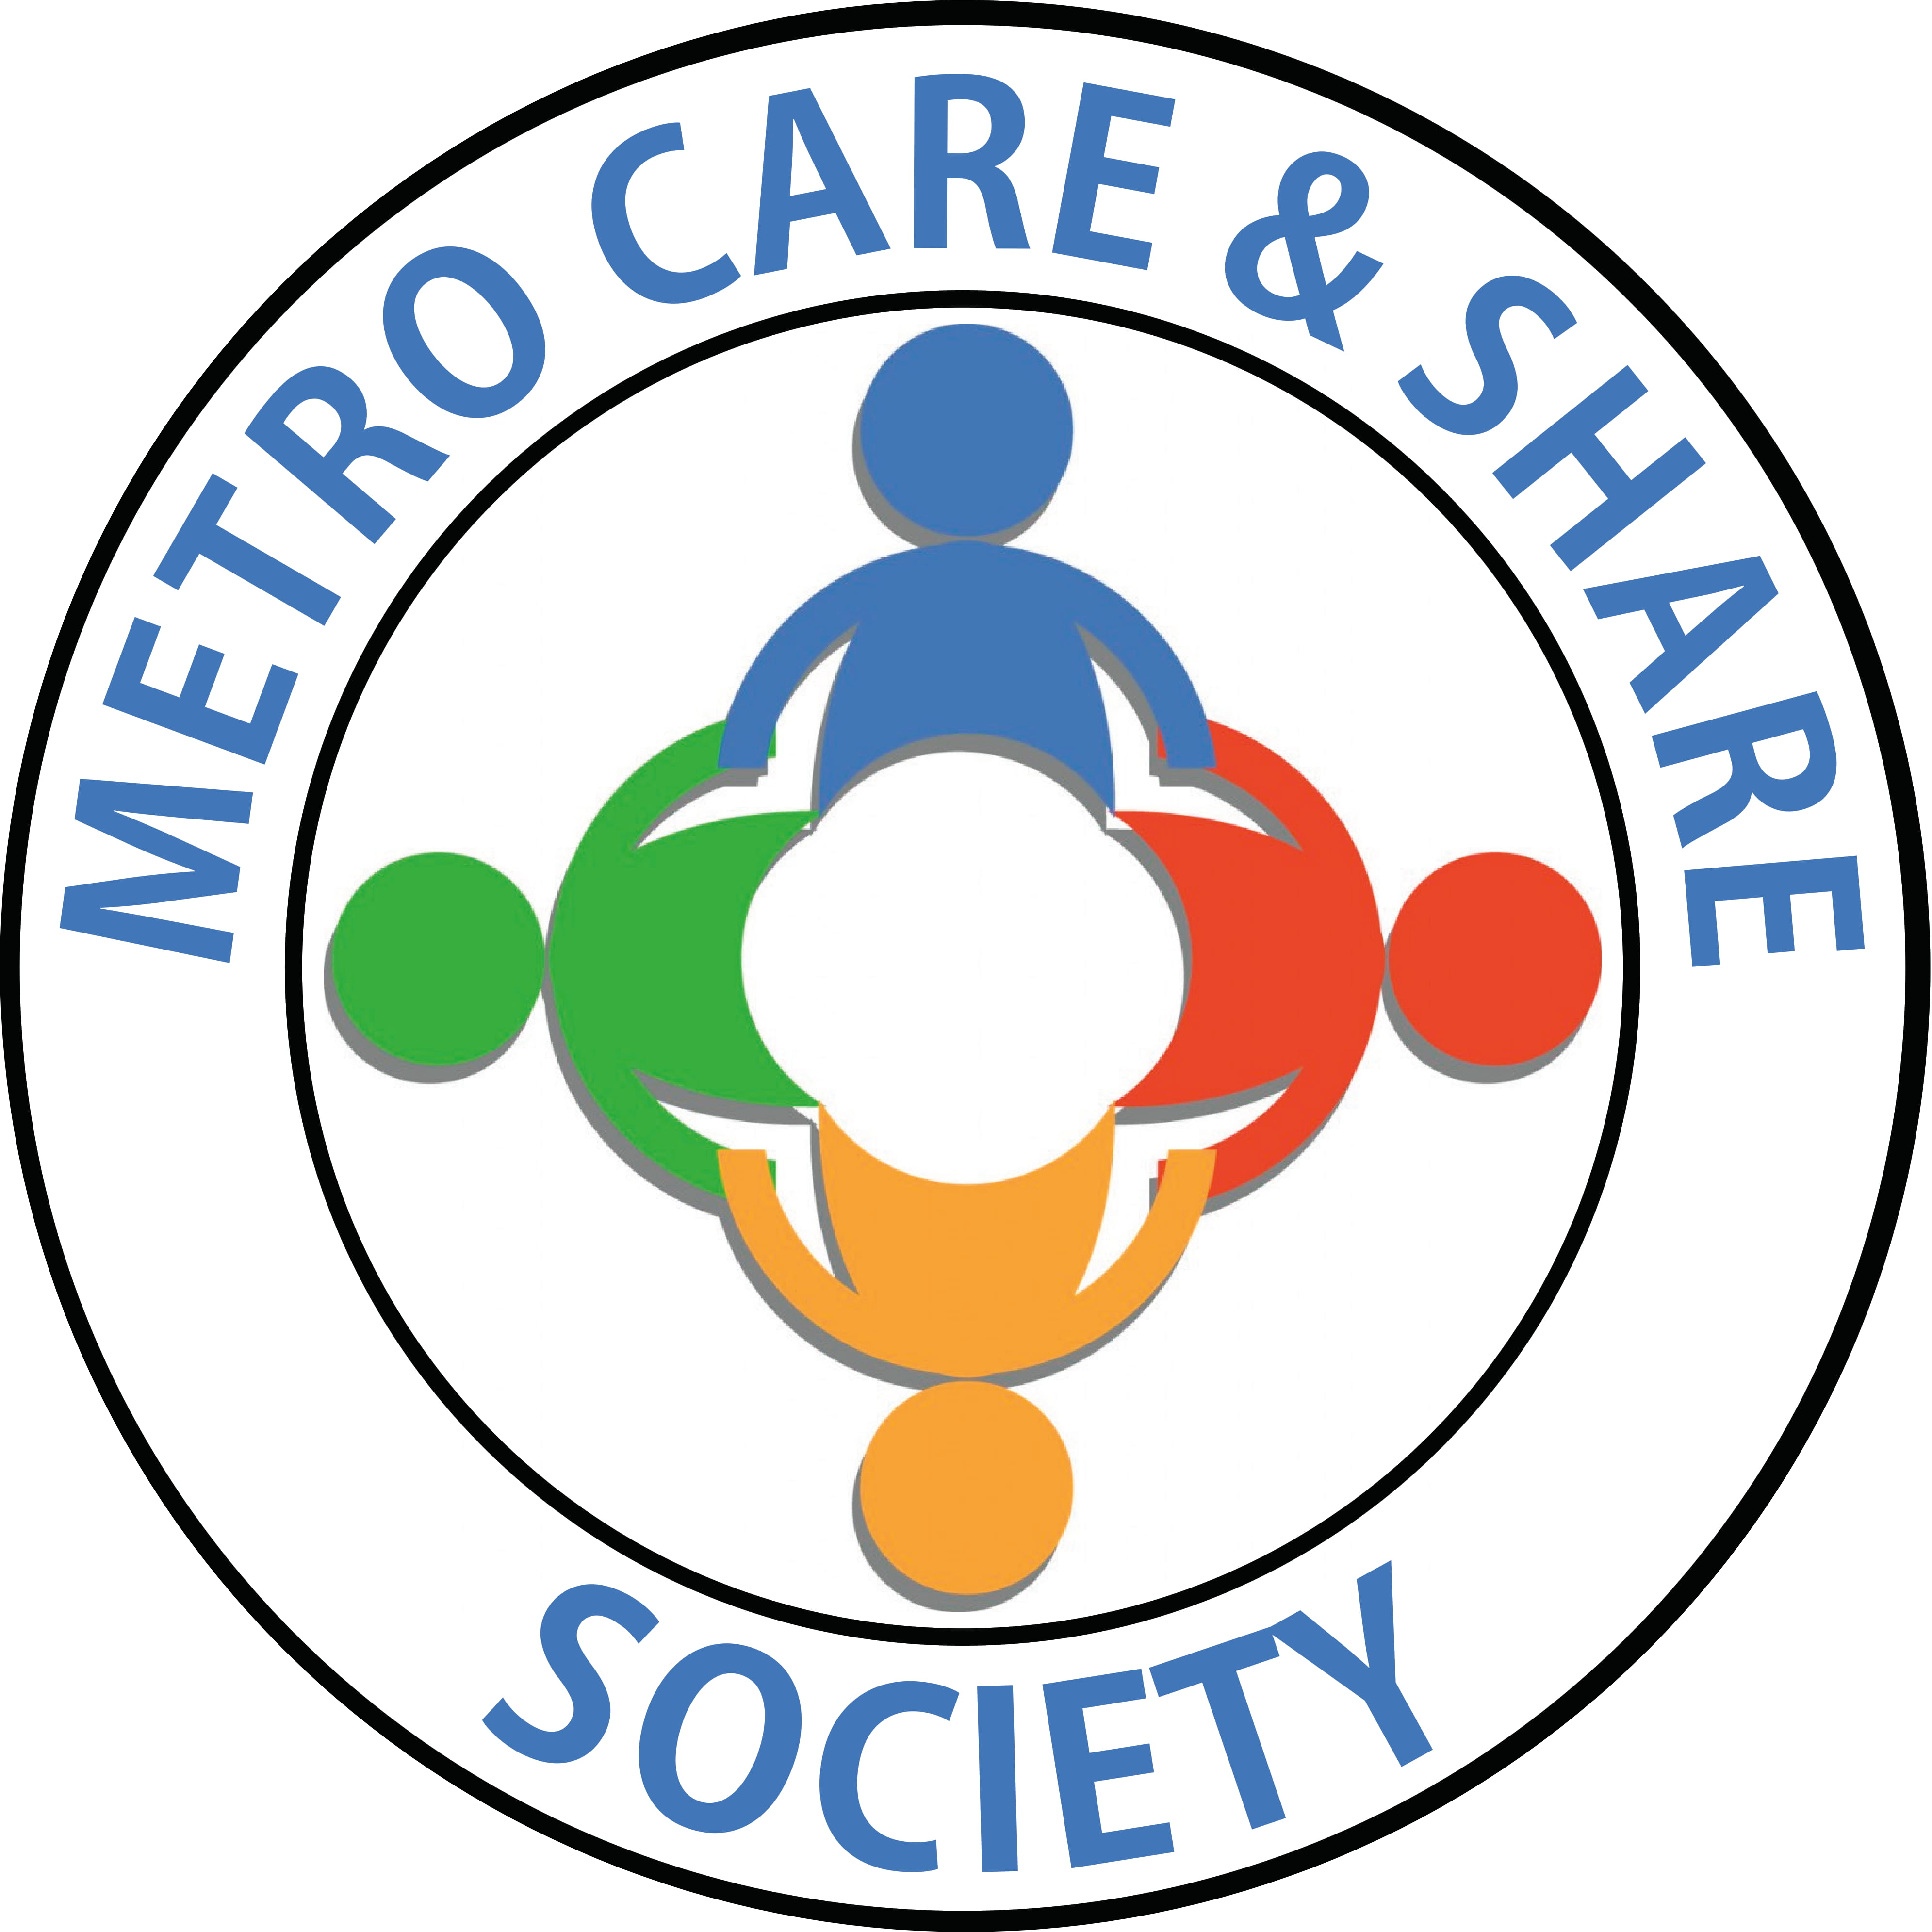 Metro Care & Share Society Logo